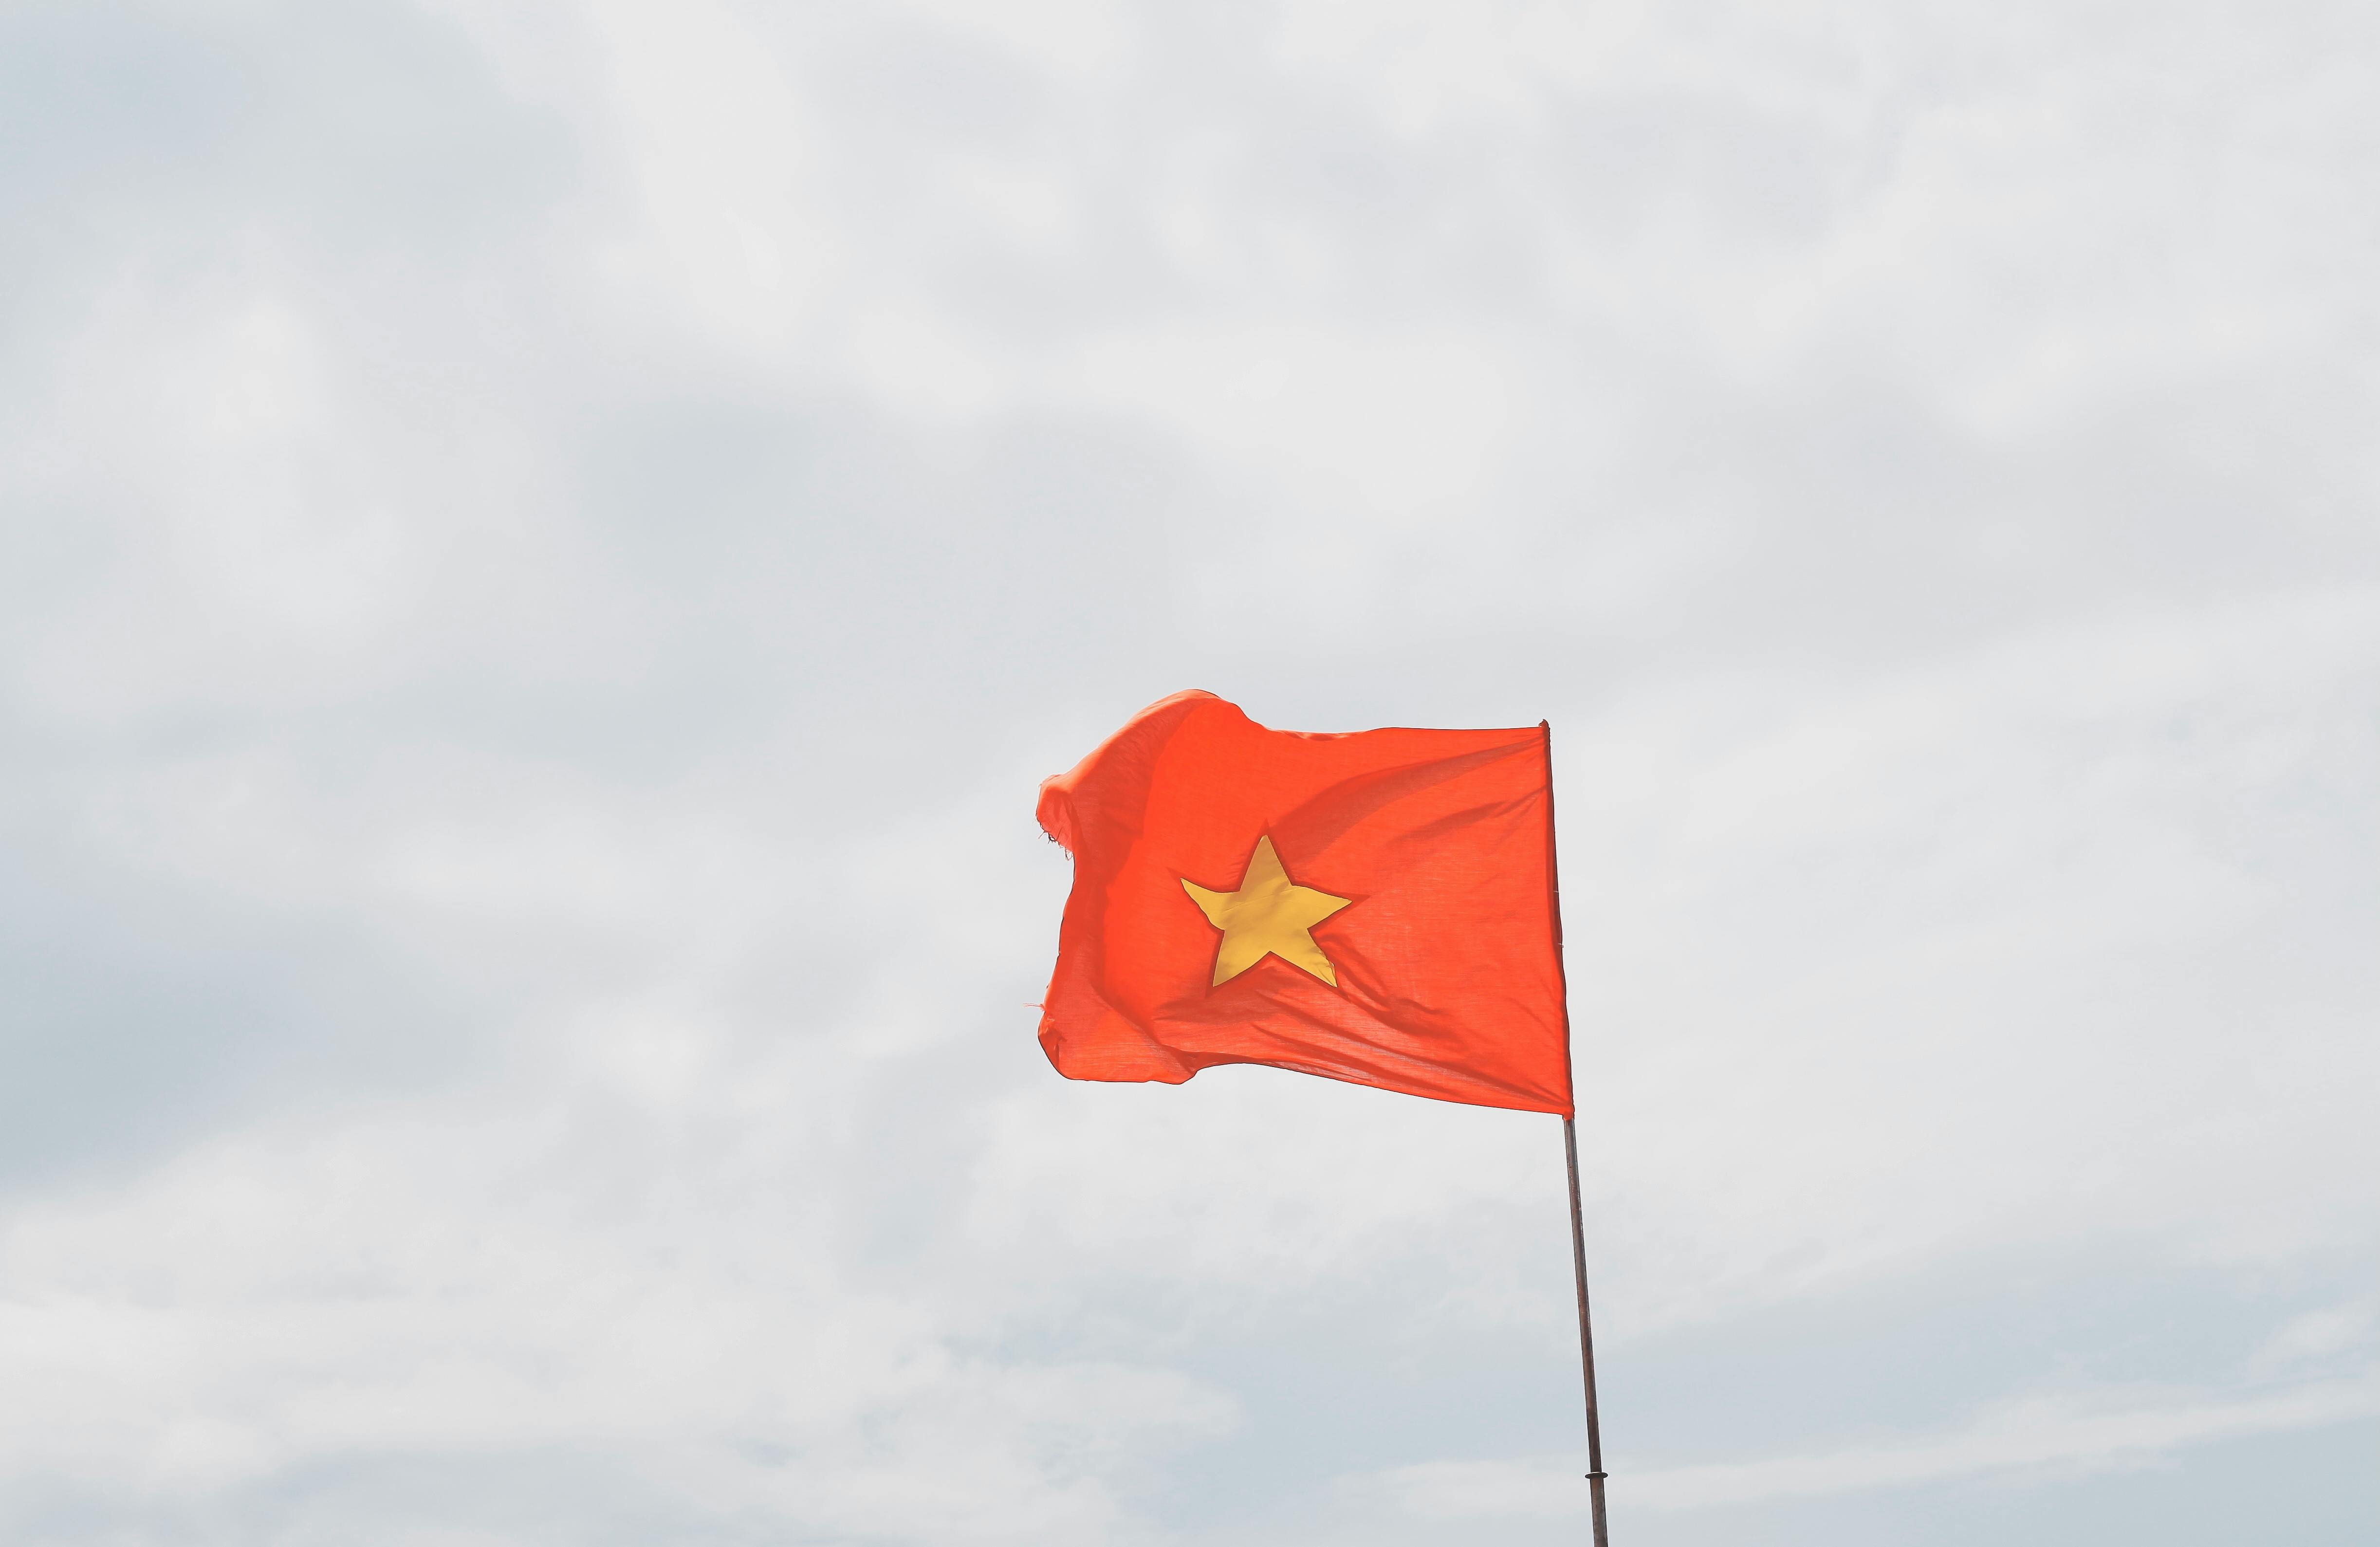 Cờ đỏ sao vàng: Hì hục tập luyện cùng với một bức ảnh cờ đỏ sao vàng phát sóng, bạn sẽ cảm thấy đất nước và dân tộc mình được đại diện nơi đây. Hãy cùng nhau dựng nên tinh thần yêu nước và tự hào về con người Việt Nam.